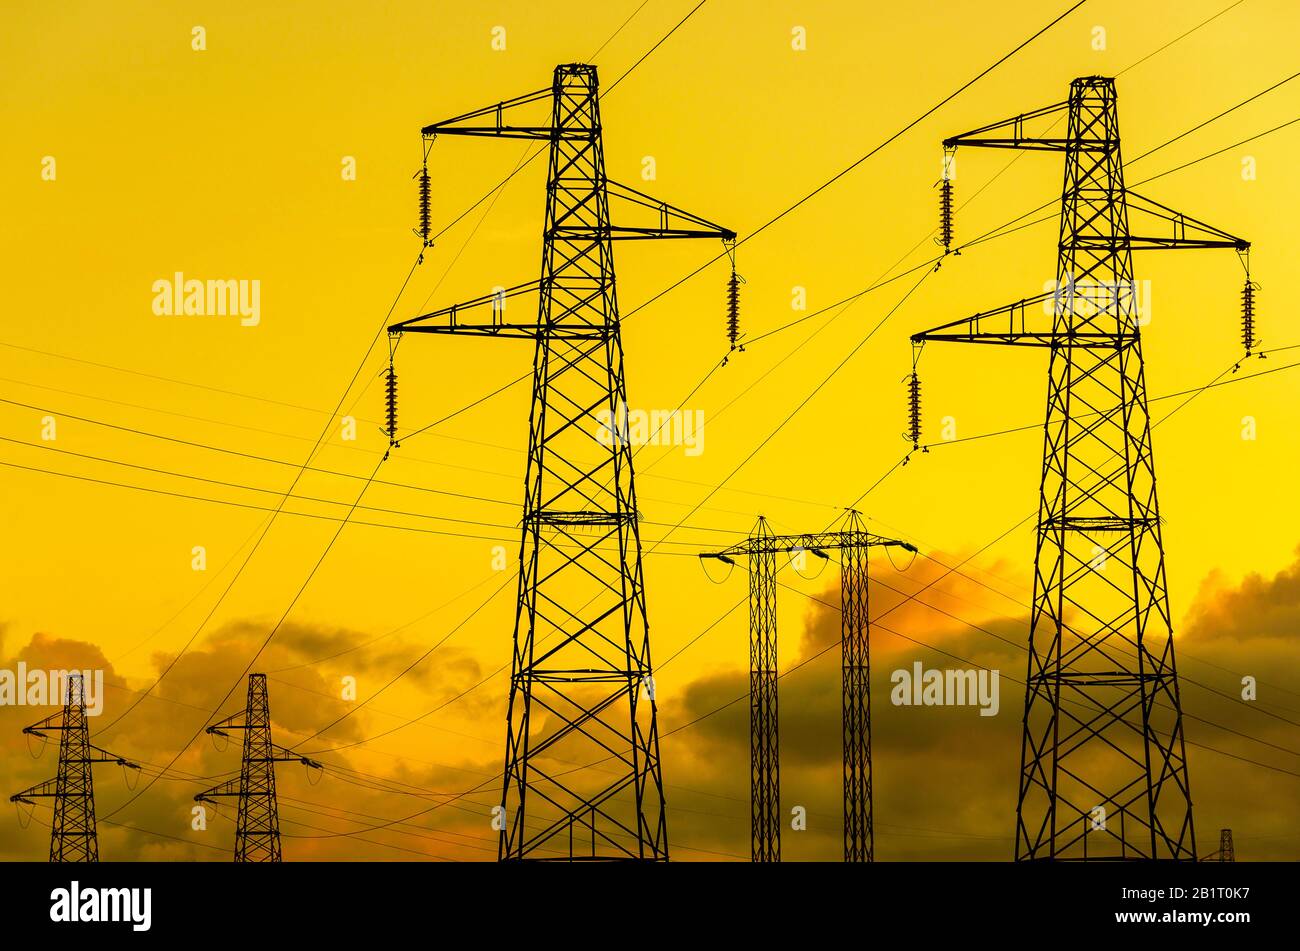 Energieübertragungstürme oder Elektrizitätspylone mit goldenem Himmel und Wolken Stockfoto